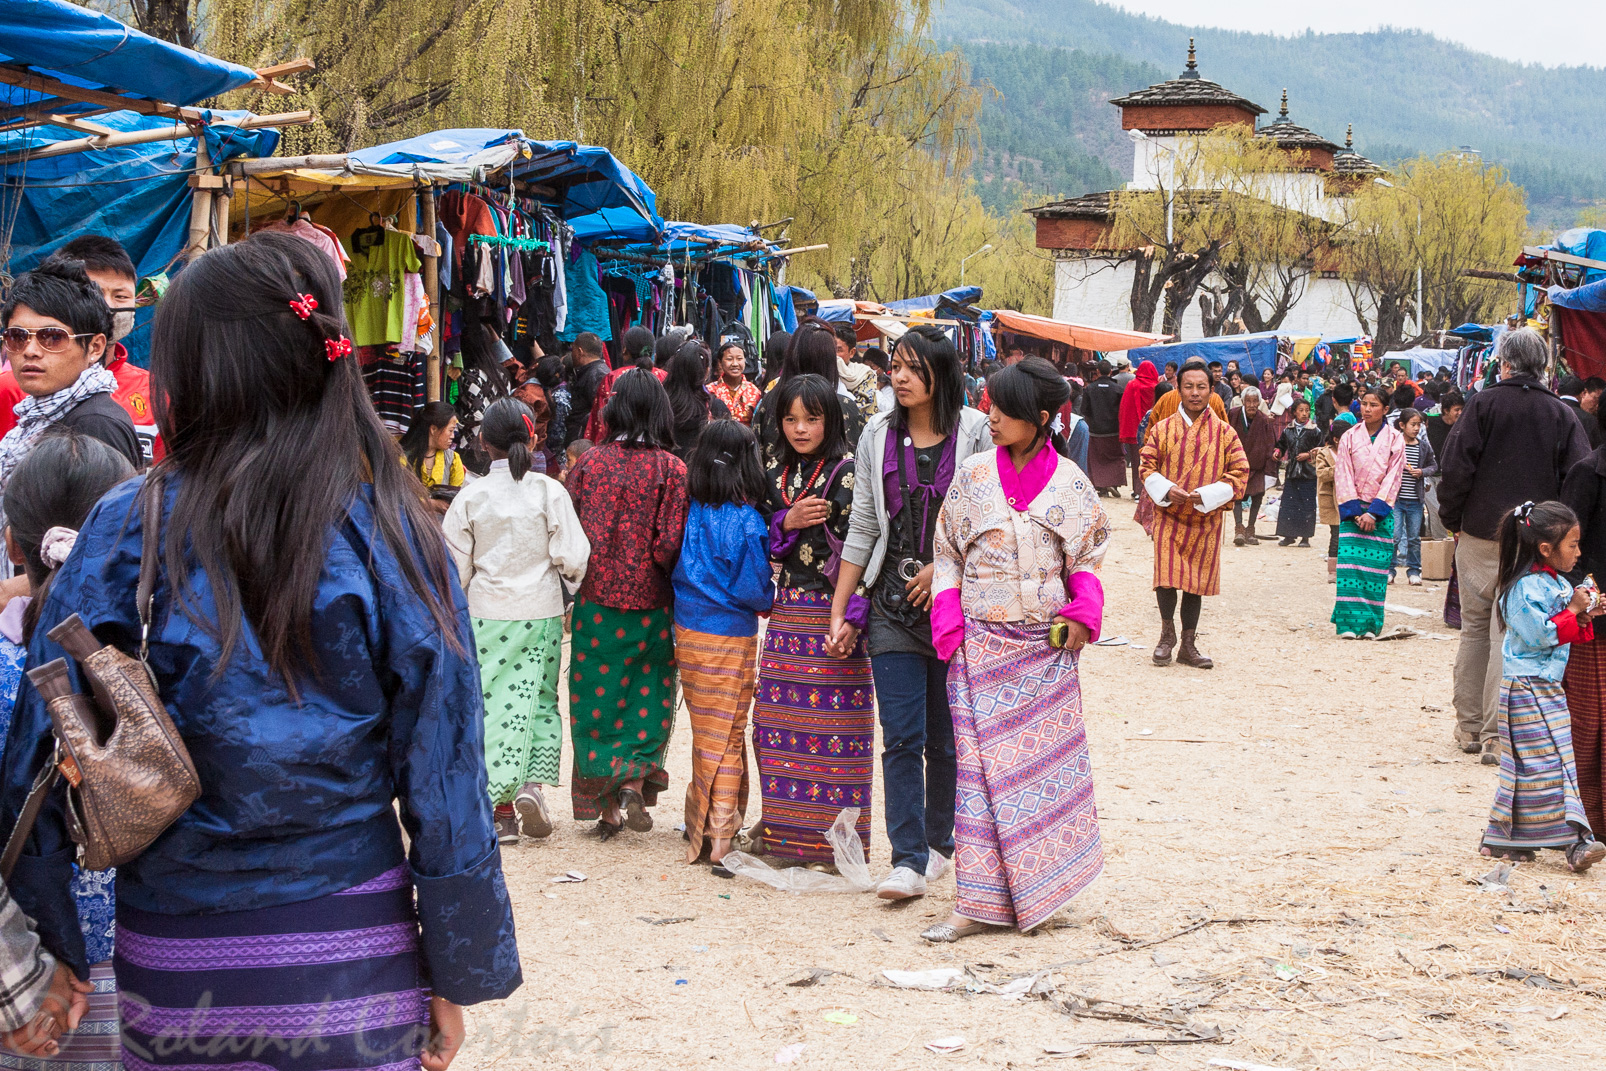 A l'occasion du festival de Paro, une visite au marché s'impose pour rencontrer la population bhoutanaise.